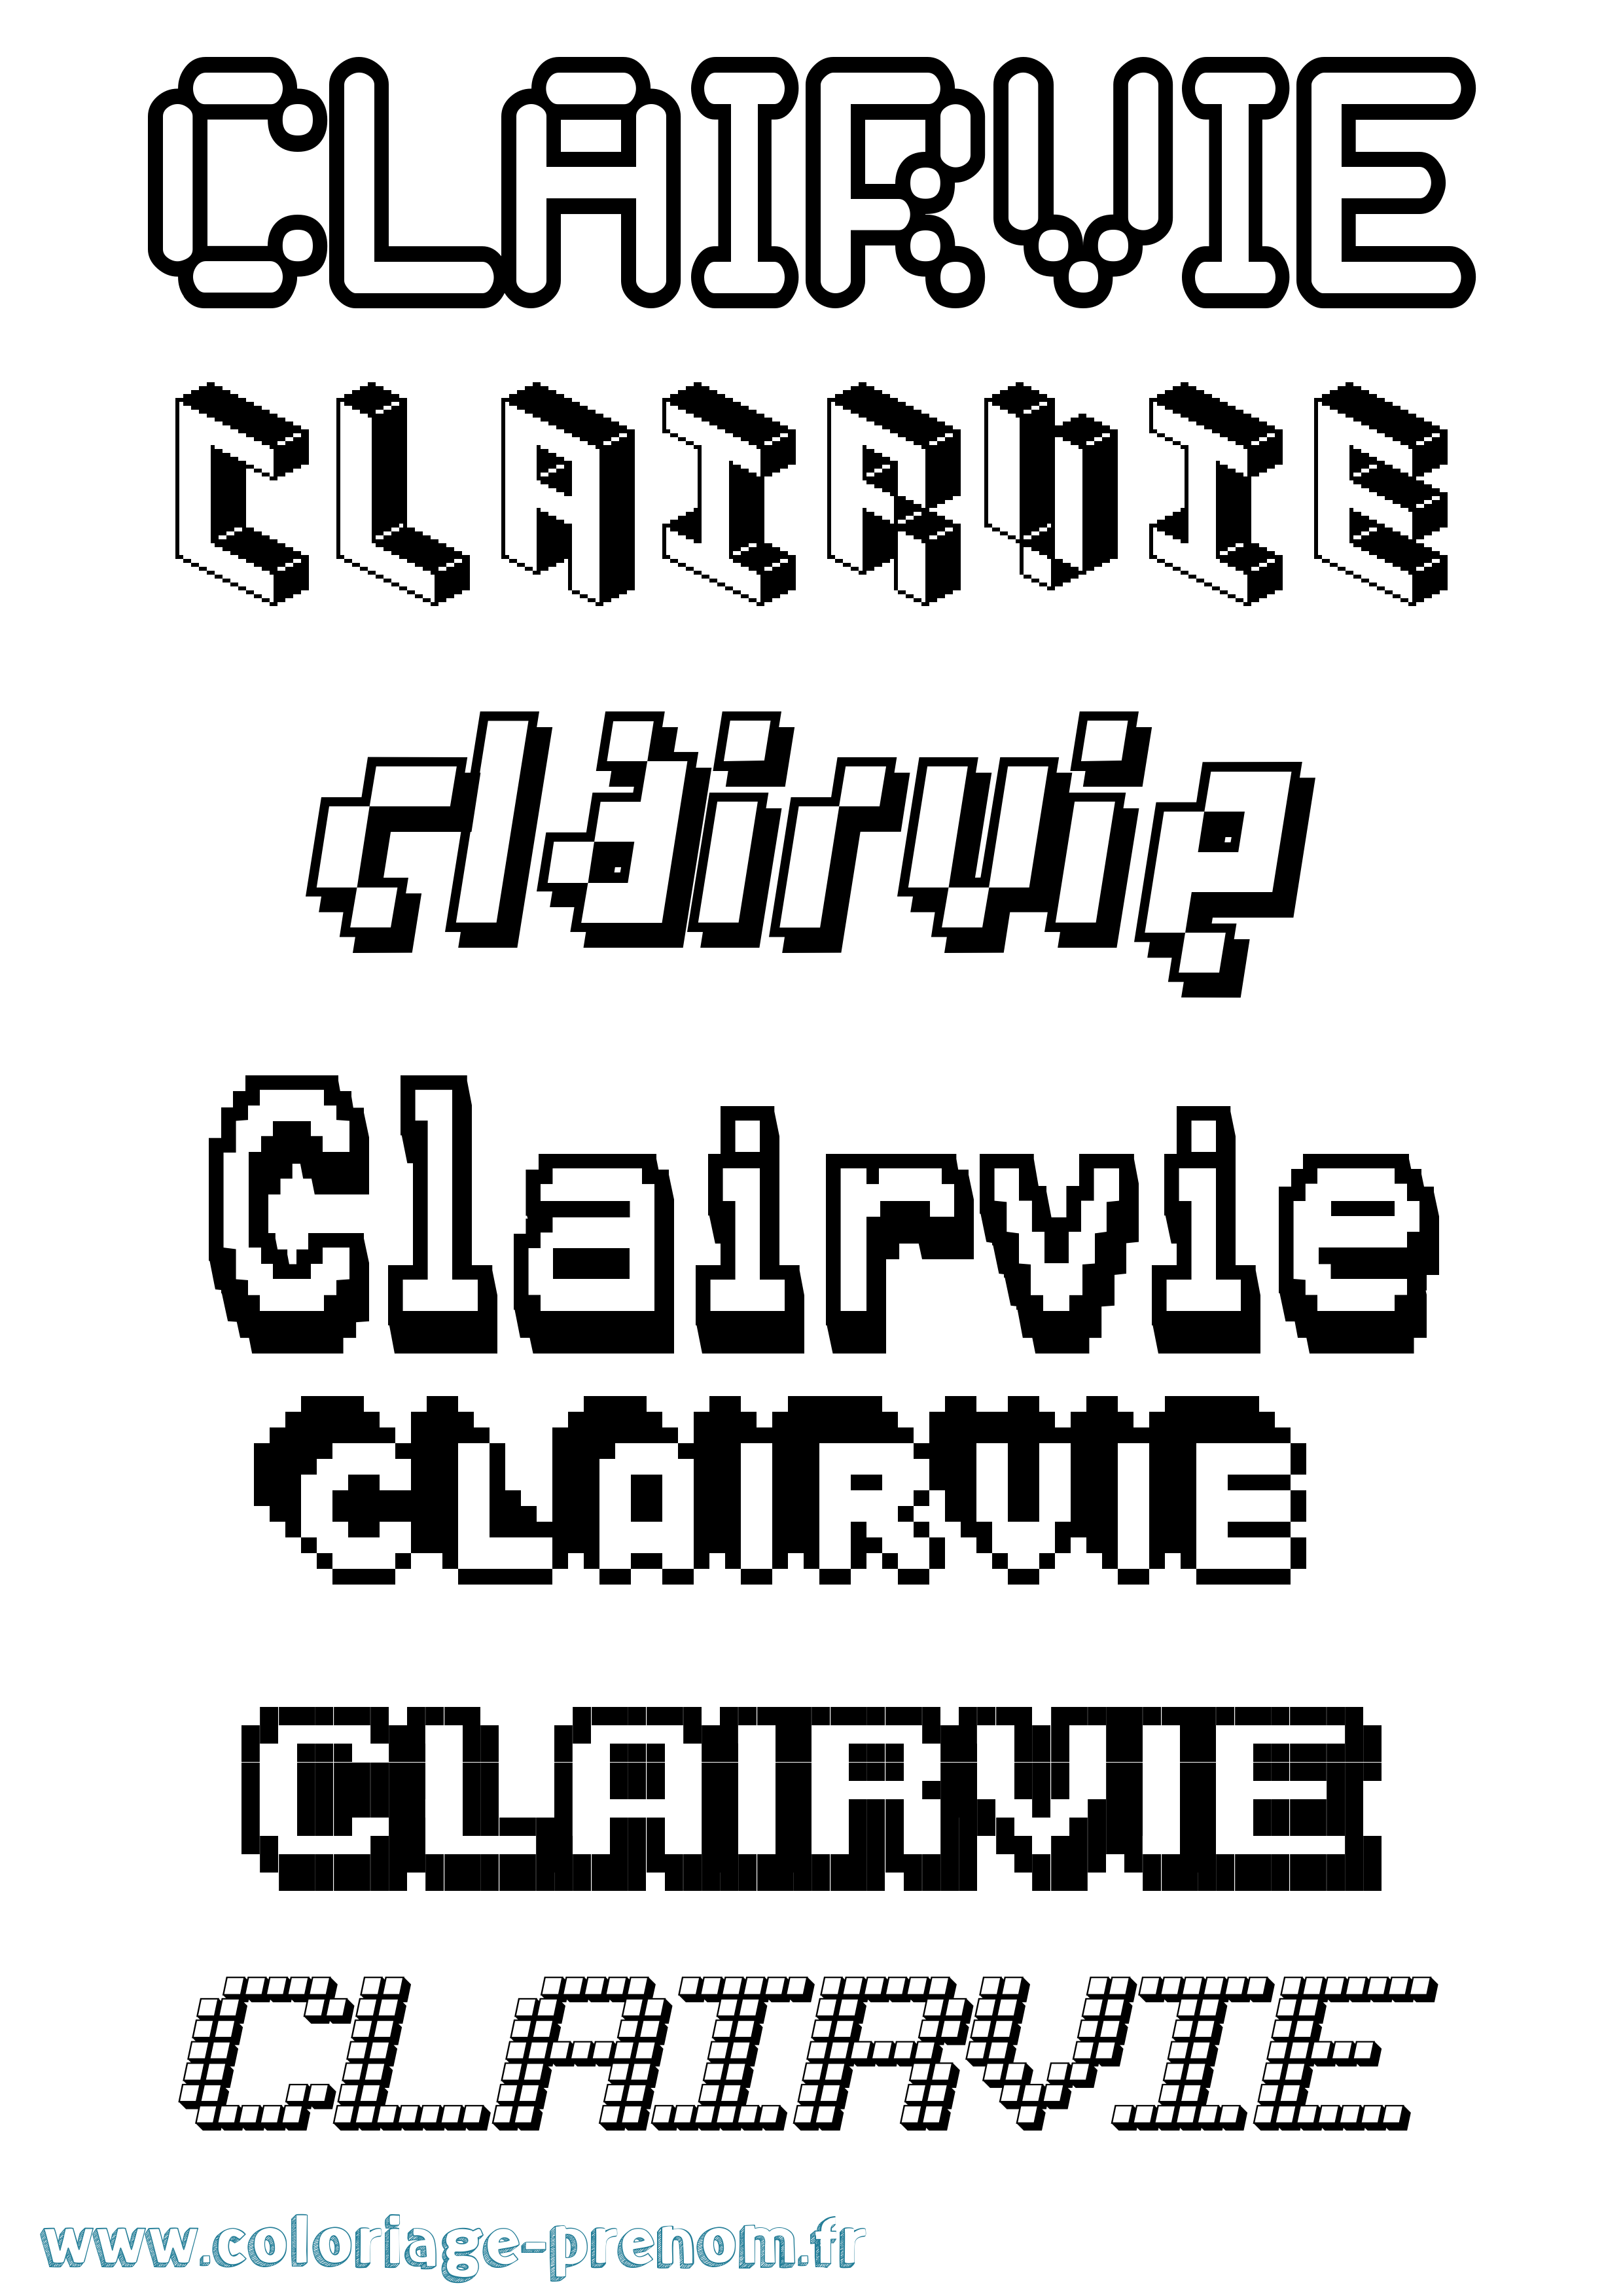 Coloriage prénom Clairvie Pixel